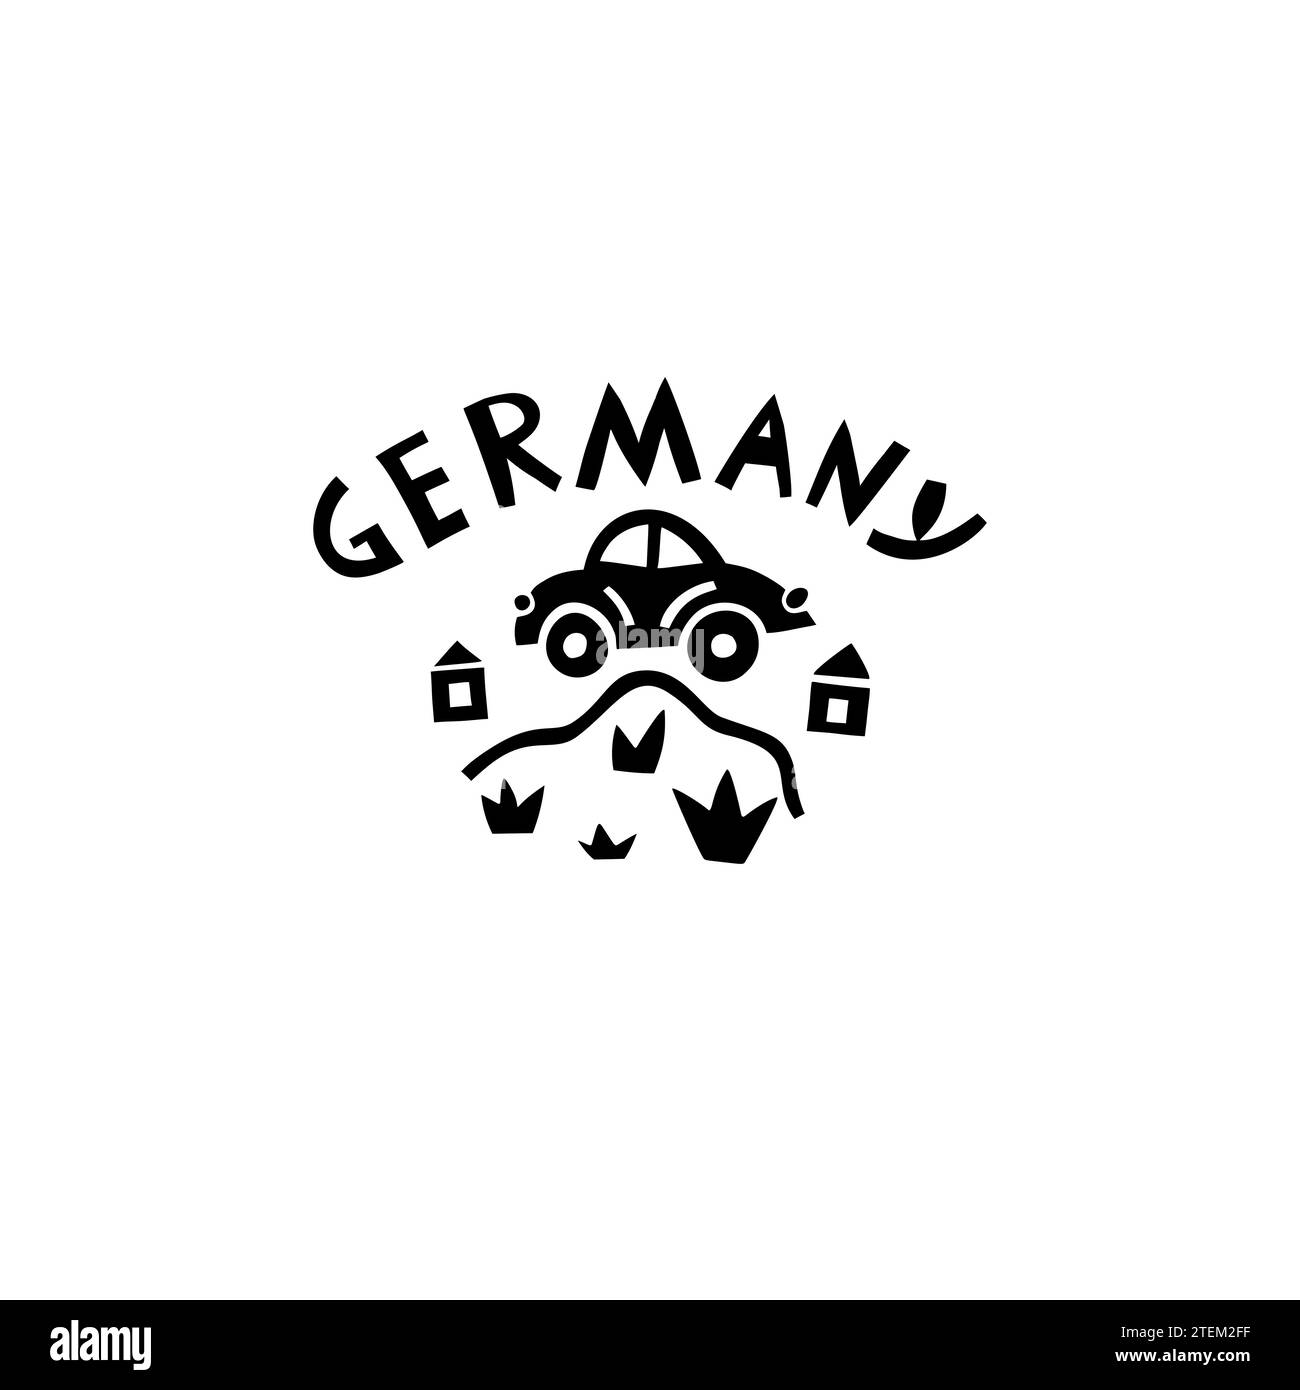 Vector Hand Drawn Germany Label. Travel Europe Illustration. Illustration du lettrage écrit à la main. Logo symbole Allemagne Illustration de Vecteur